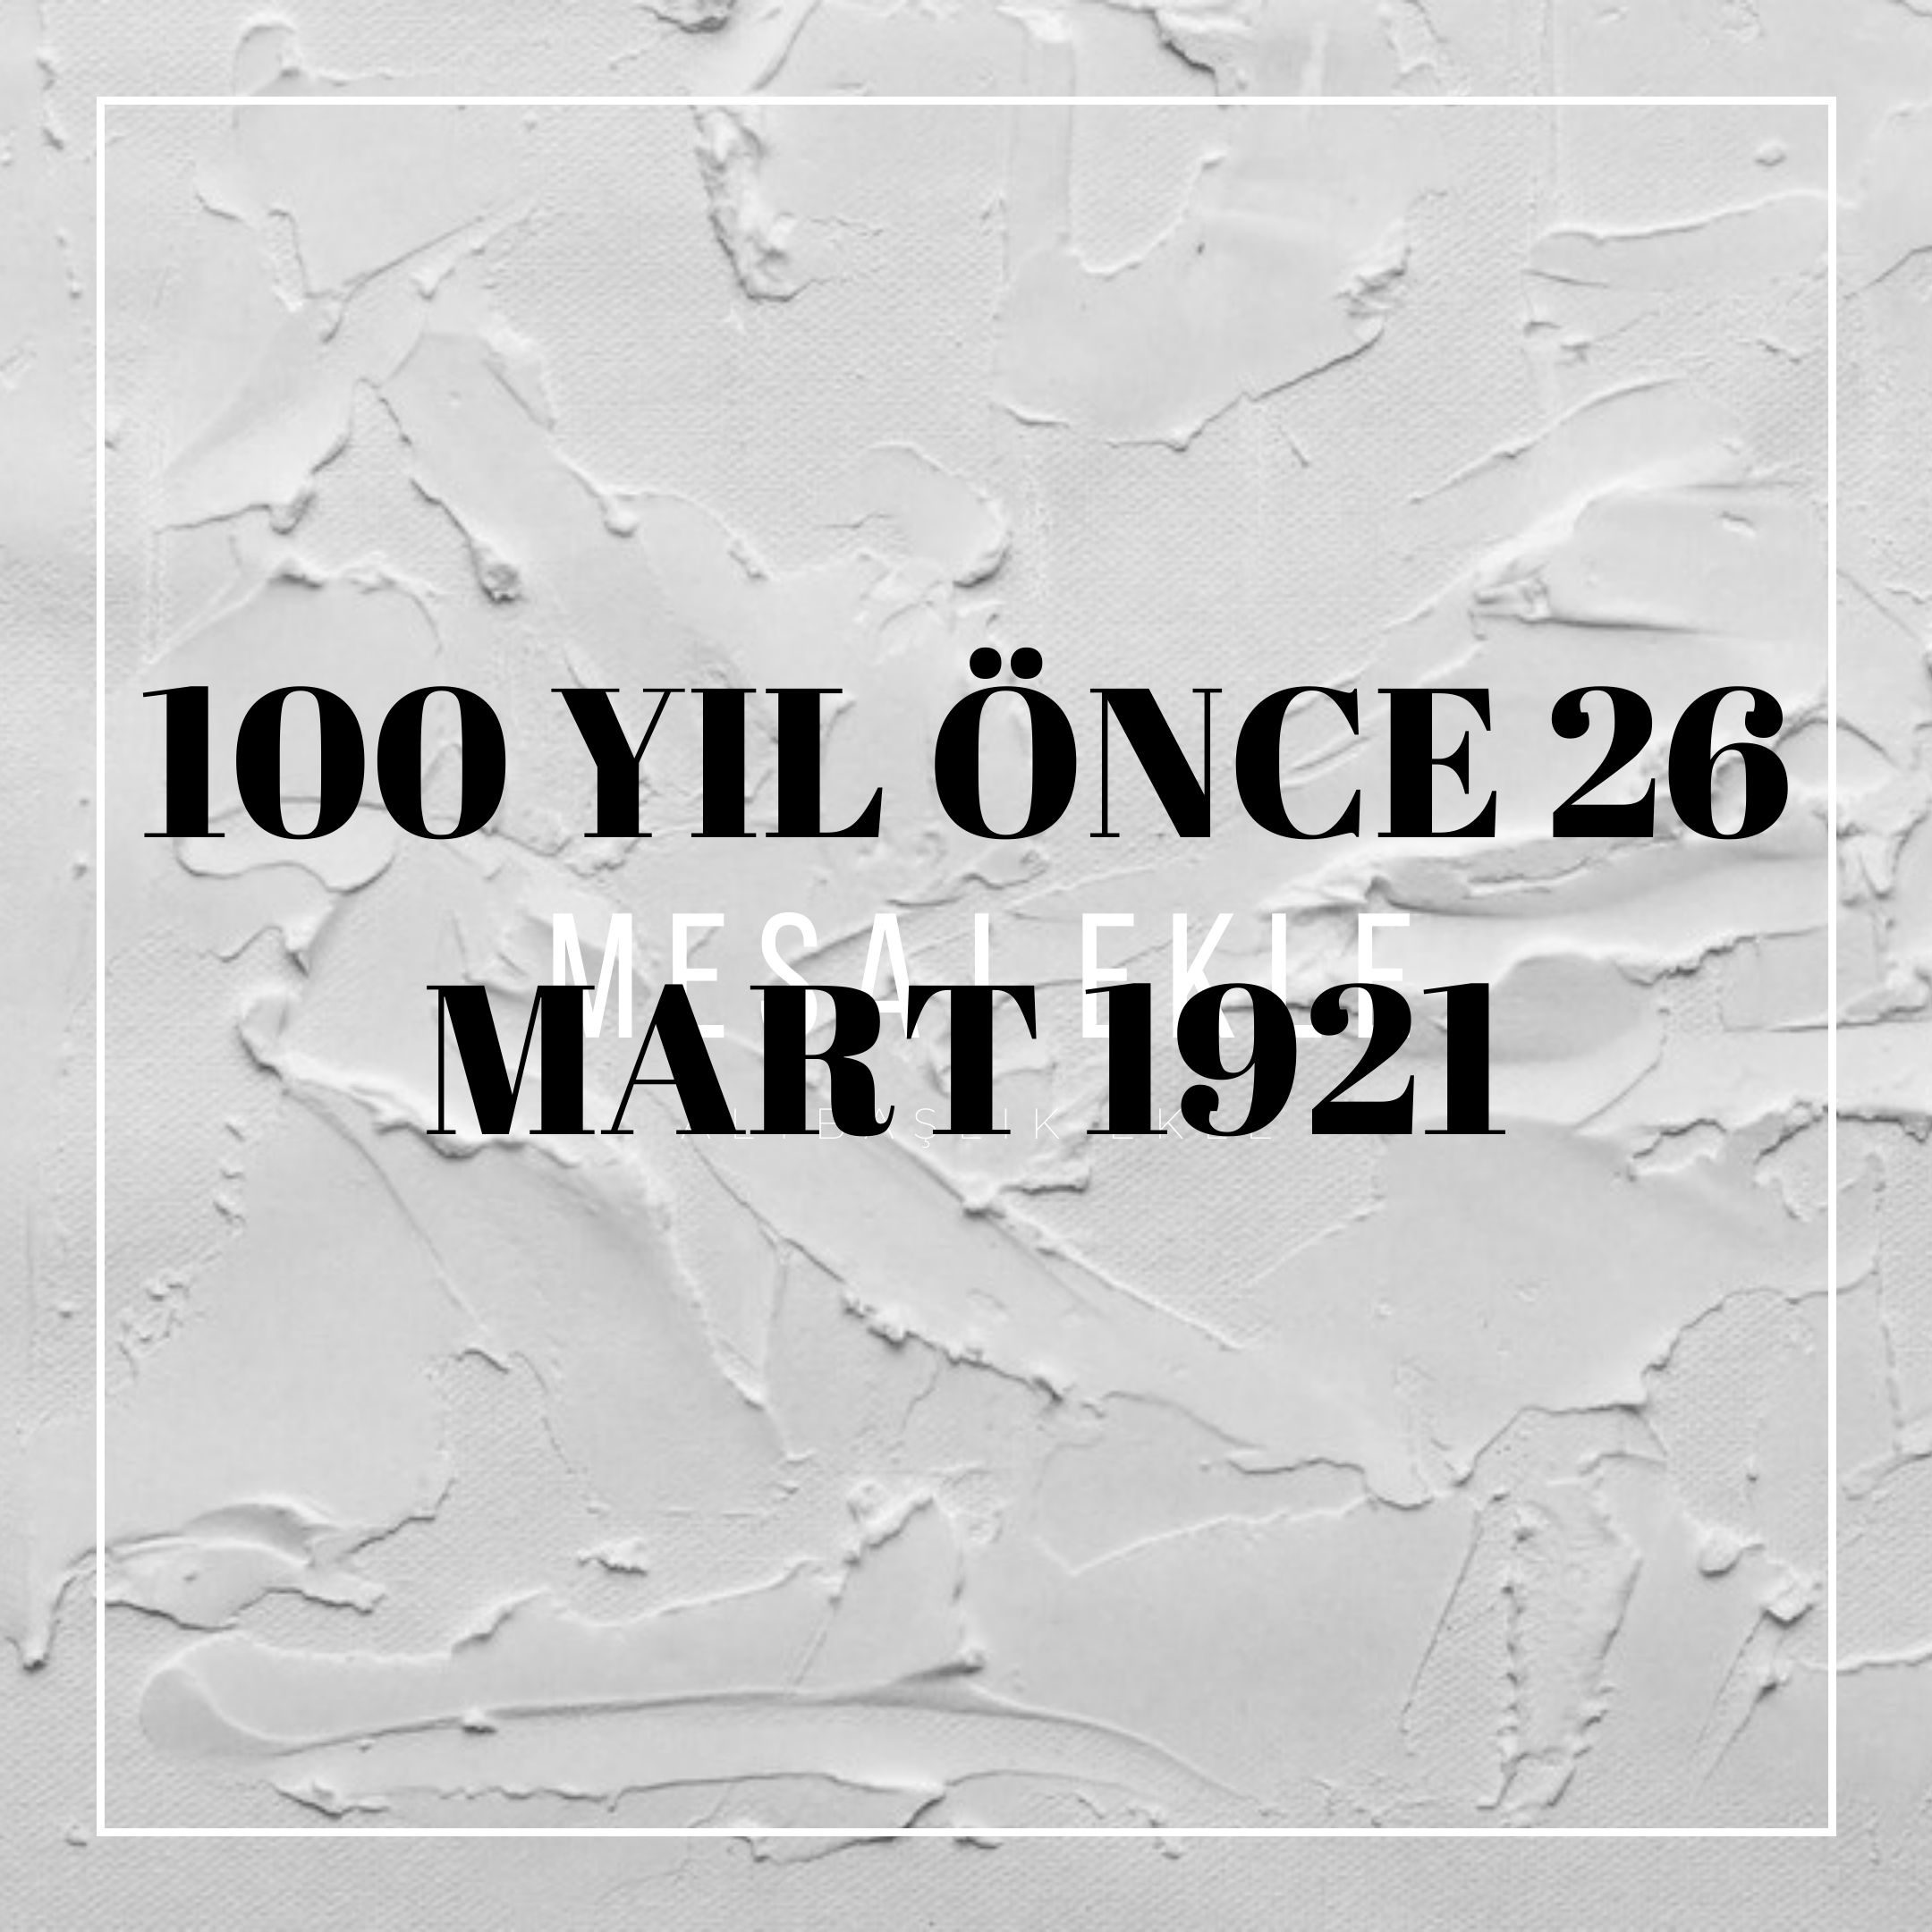 100 YIL ÖNCE 26 MART 1921